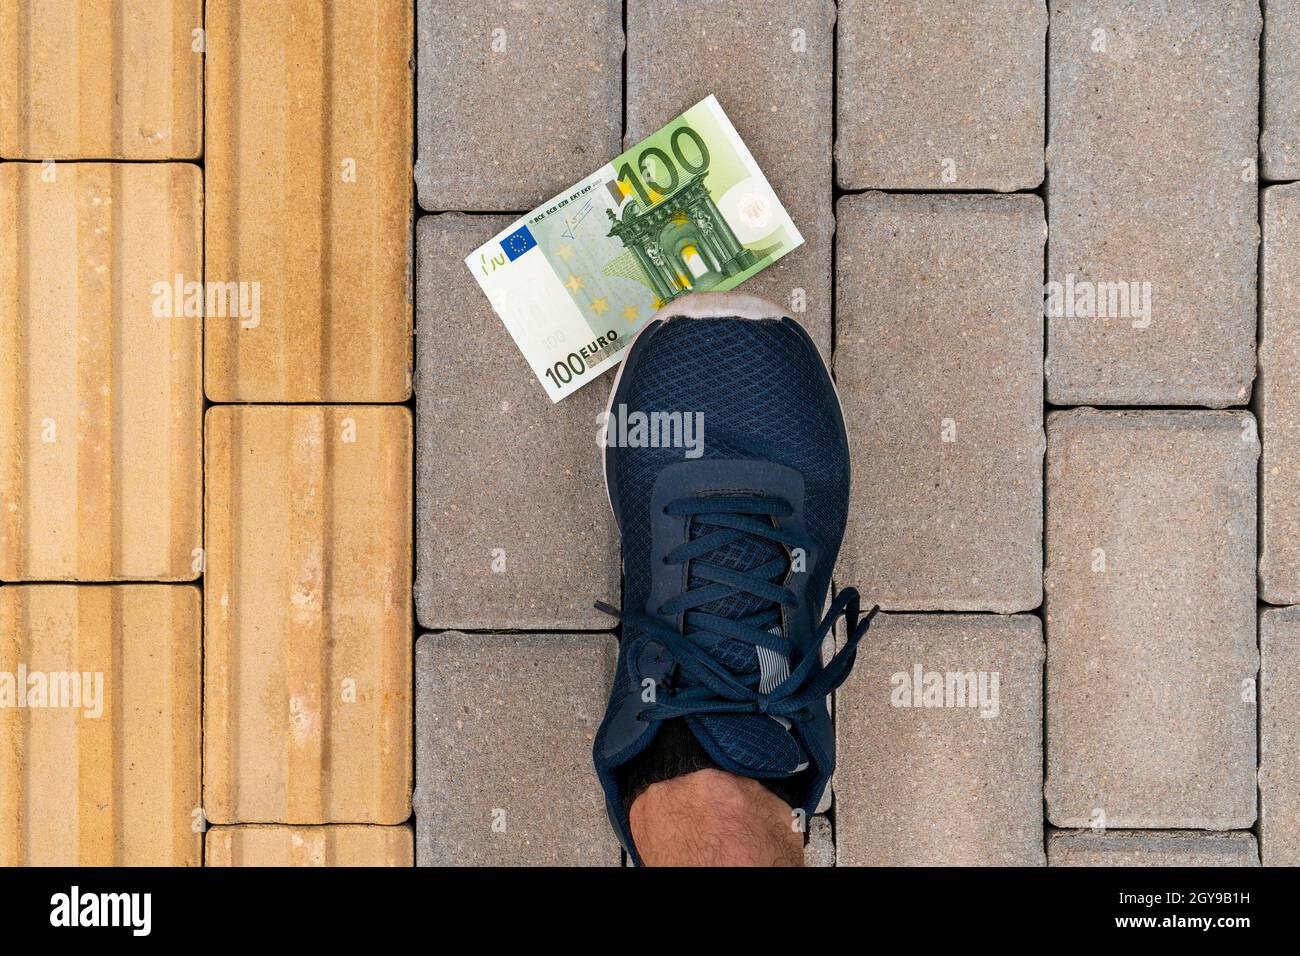 Soldi che giacciono a terra, scarpe che vi salpano. Euro persi su una strada. Foto Stock